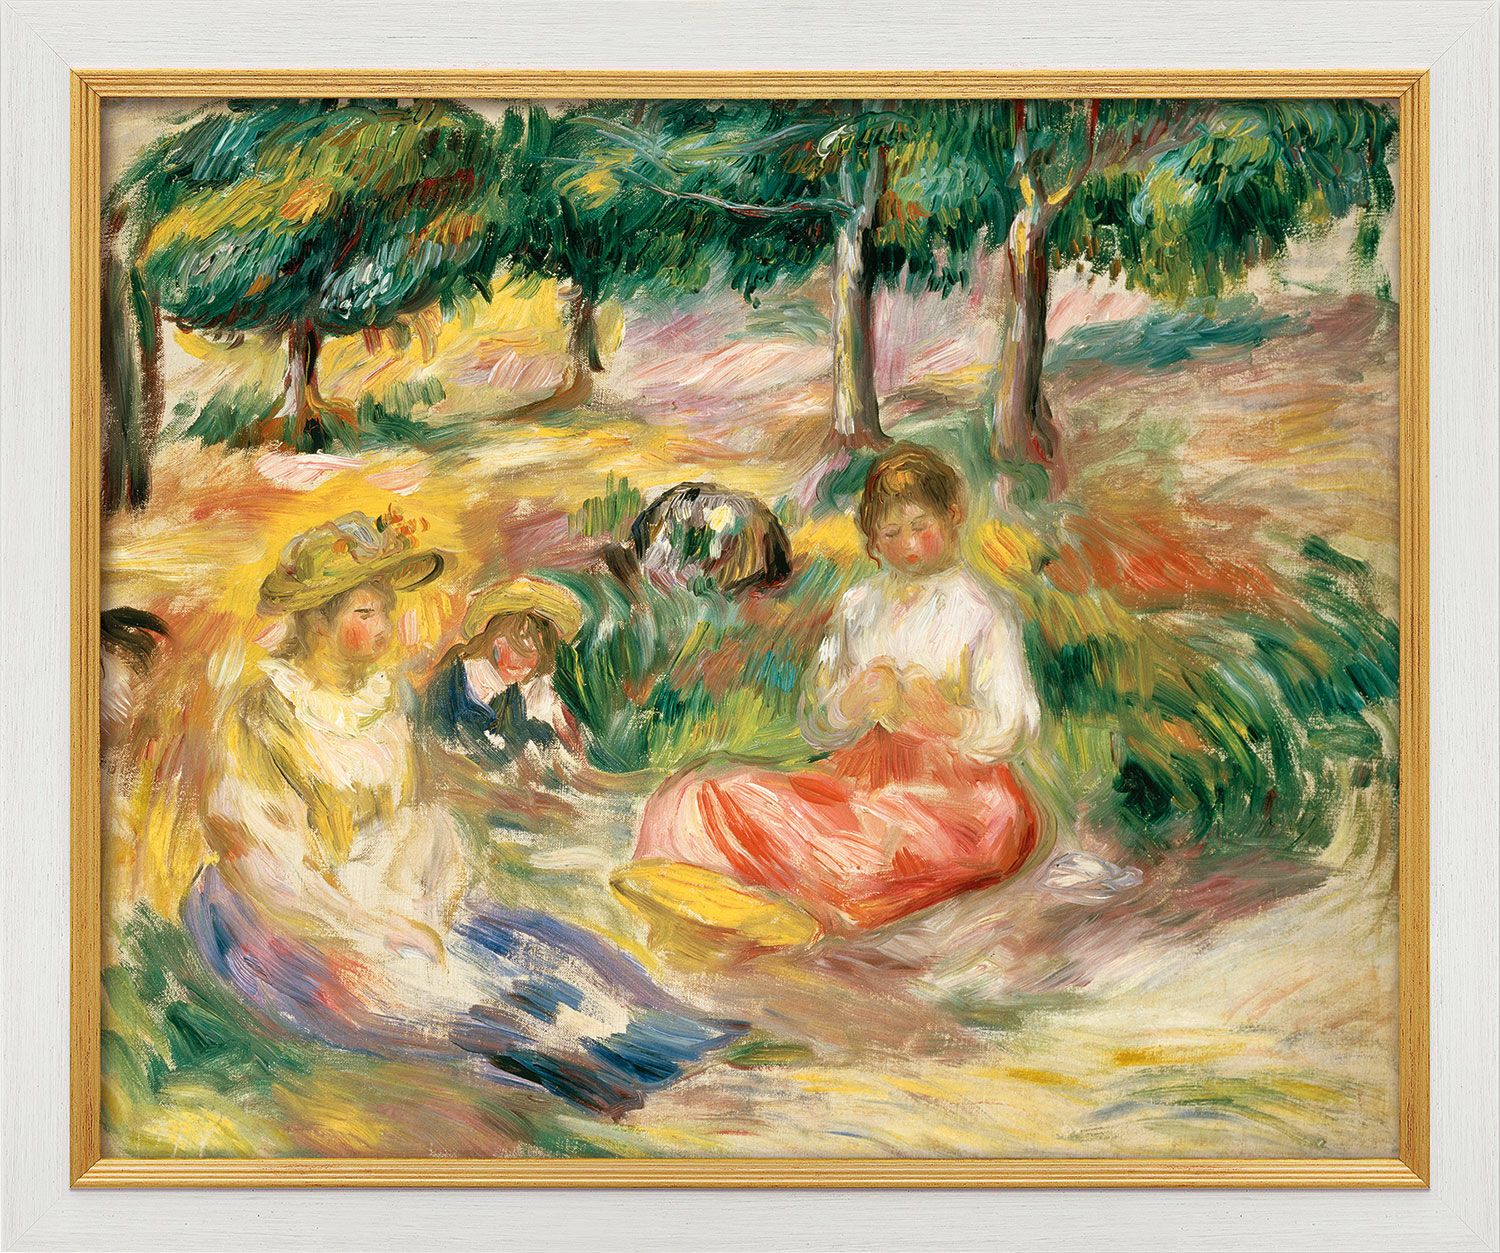 Beeld "Drie jonge meisjes zittend in het gras" (1896-97), wit met gouden lijst von Auguste Renoir